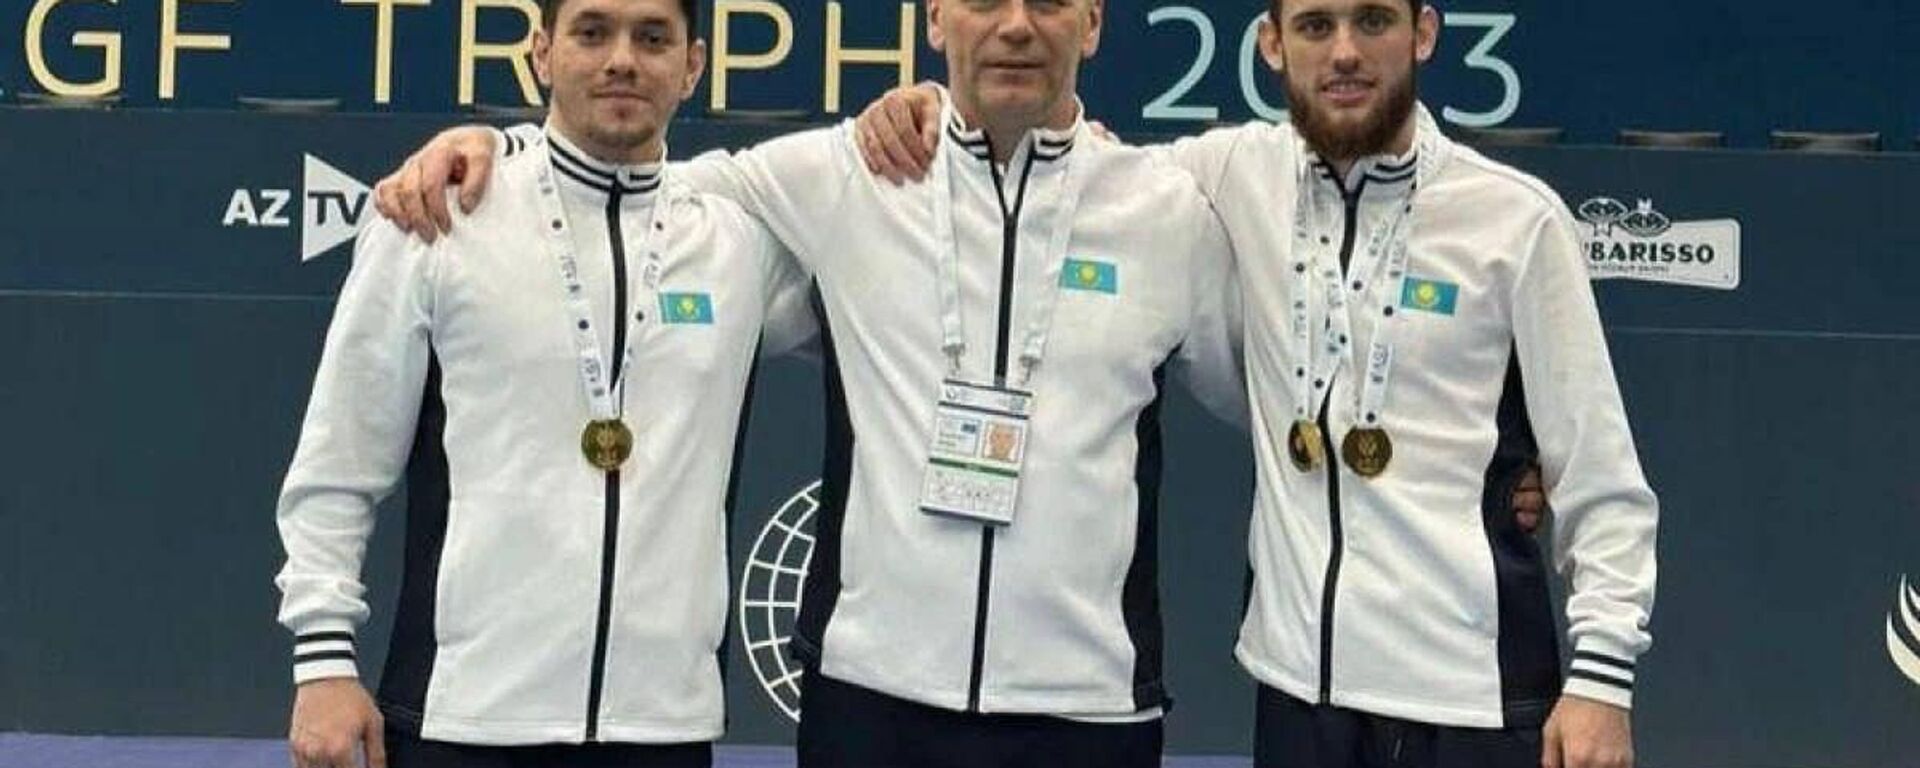 Казахстанские гимнасты взяли два золота на этапе кубка мира в Баку - Sputnik Казахстан, 1920, 20.02.2023